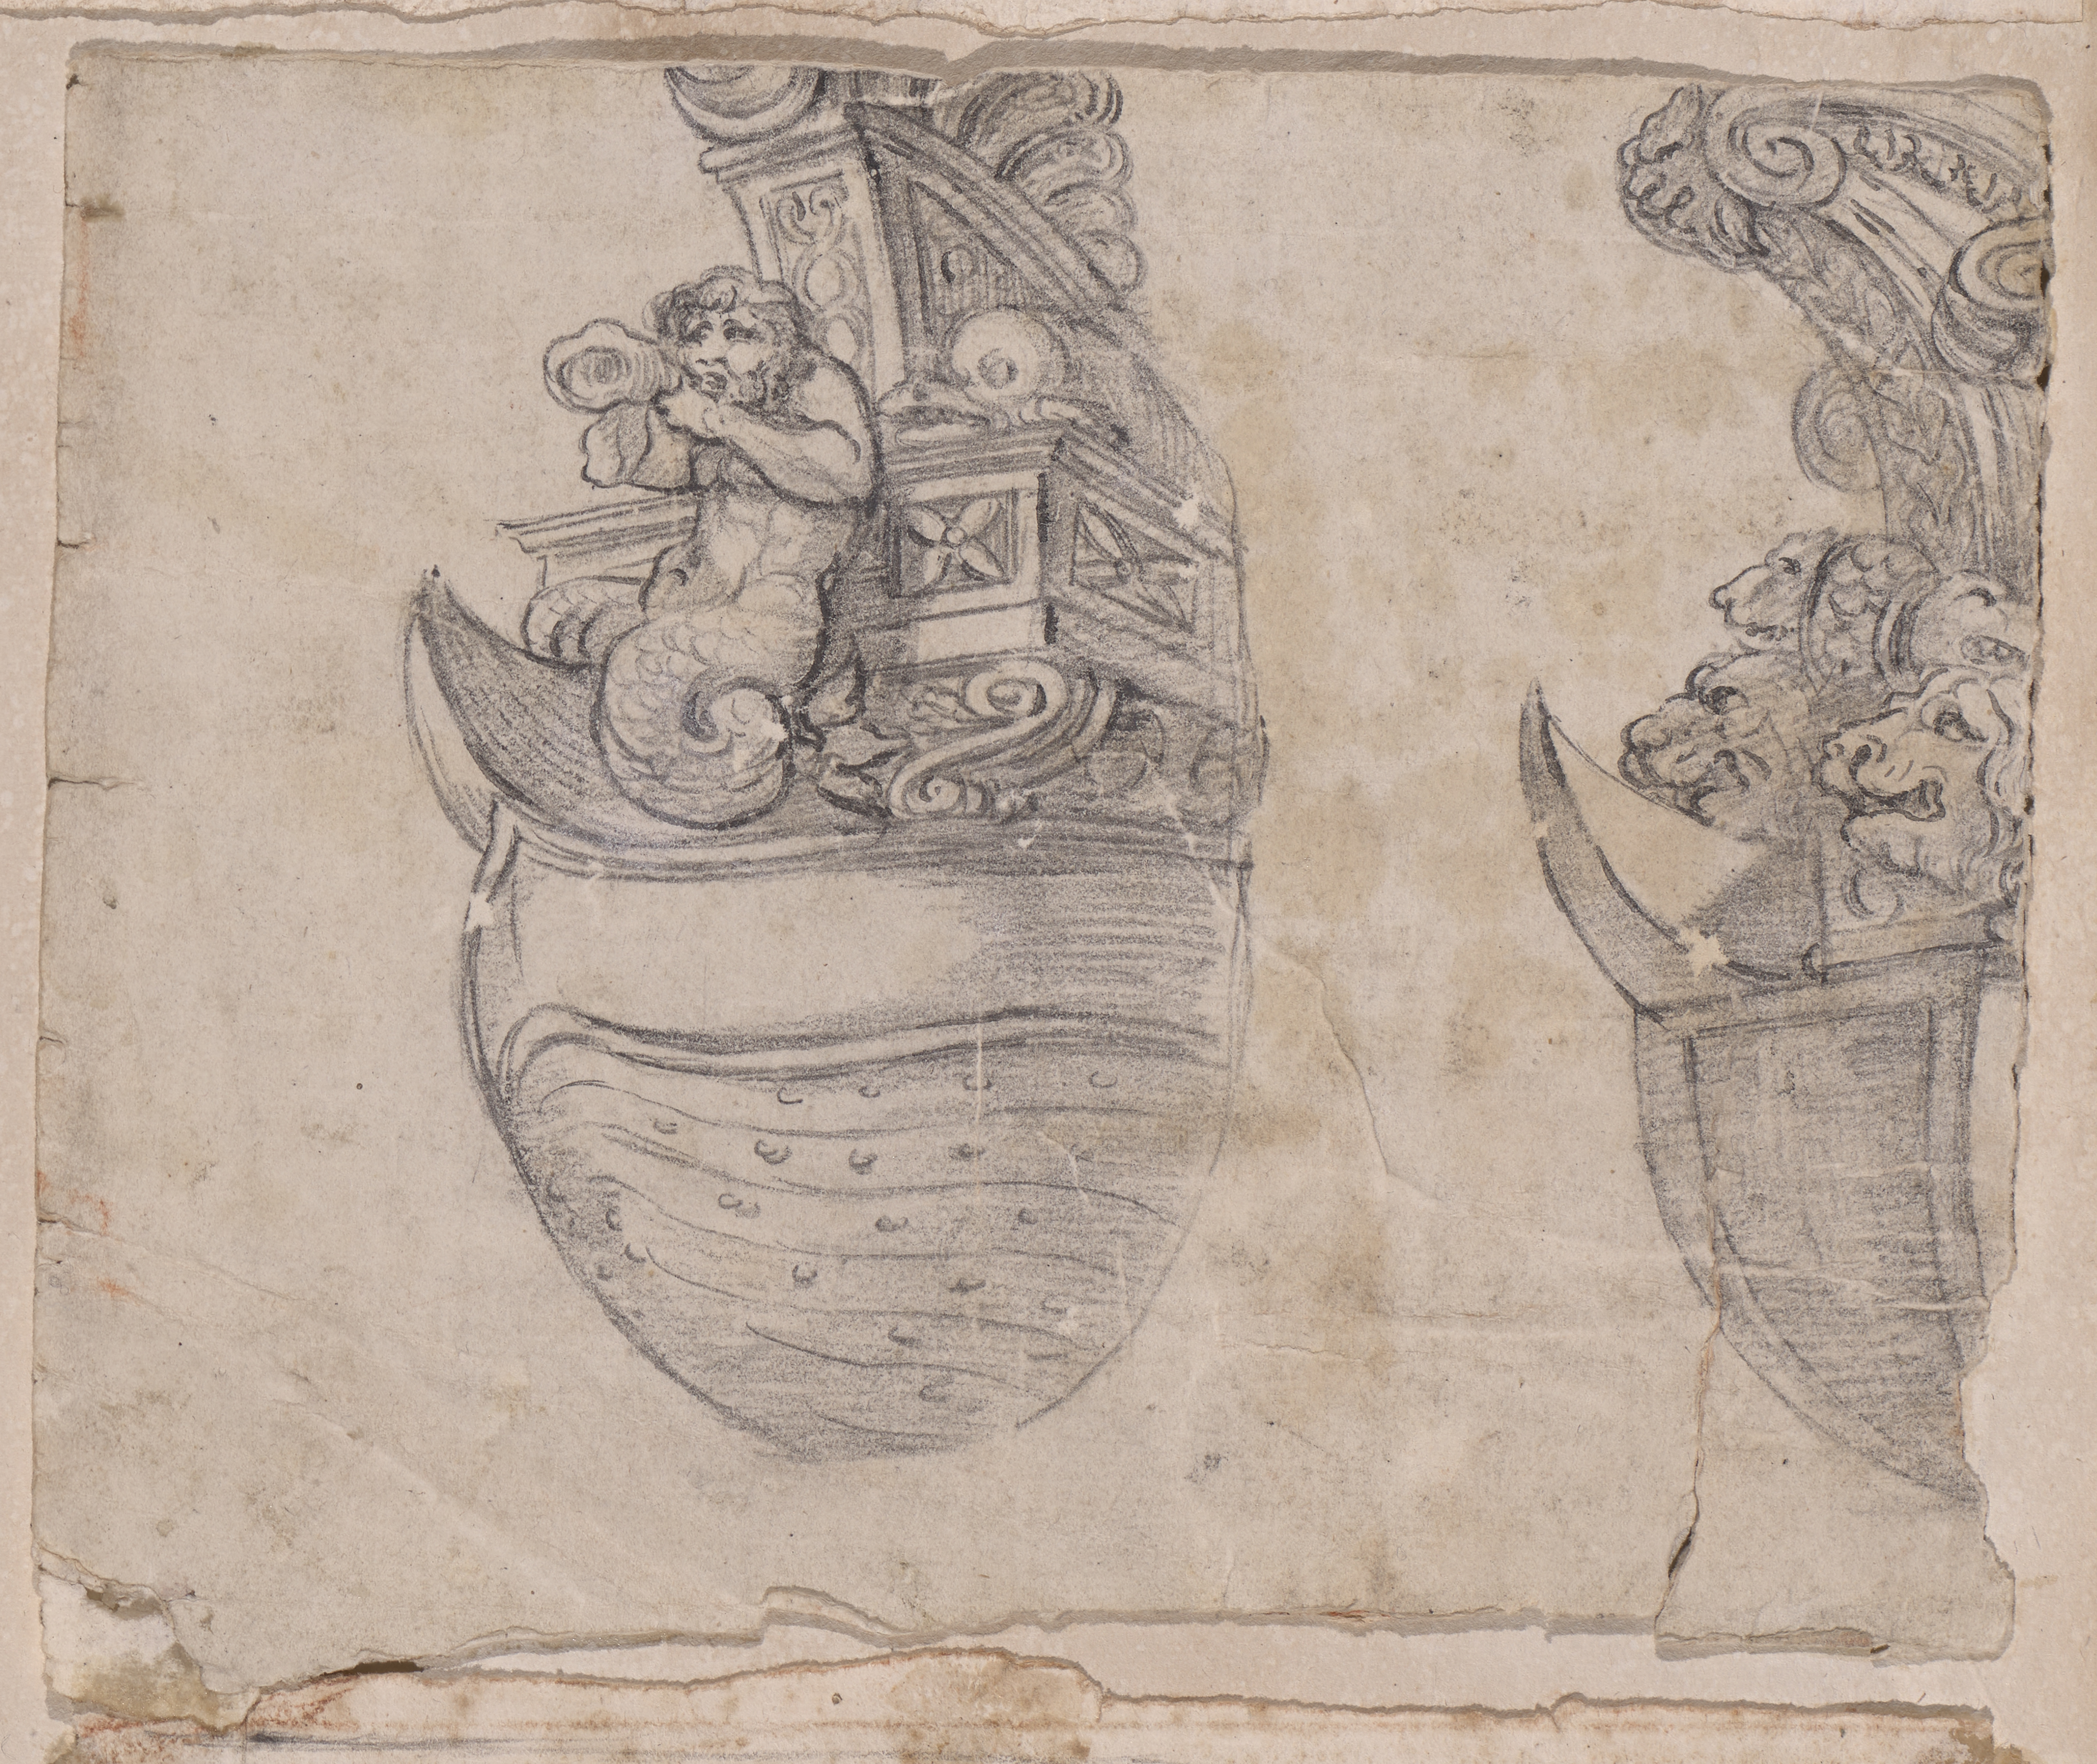 Zeichnung zweier Fischschnäbel aus dem Piranesi Klebealbum 1 aus der Sammlung der Staatlichen Kunsthalle Karlsruhe